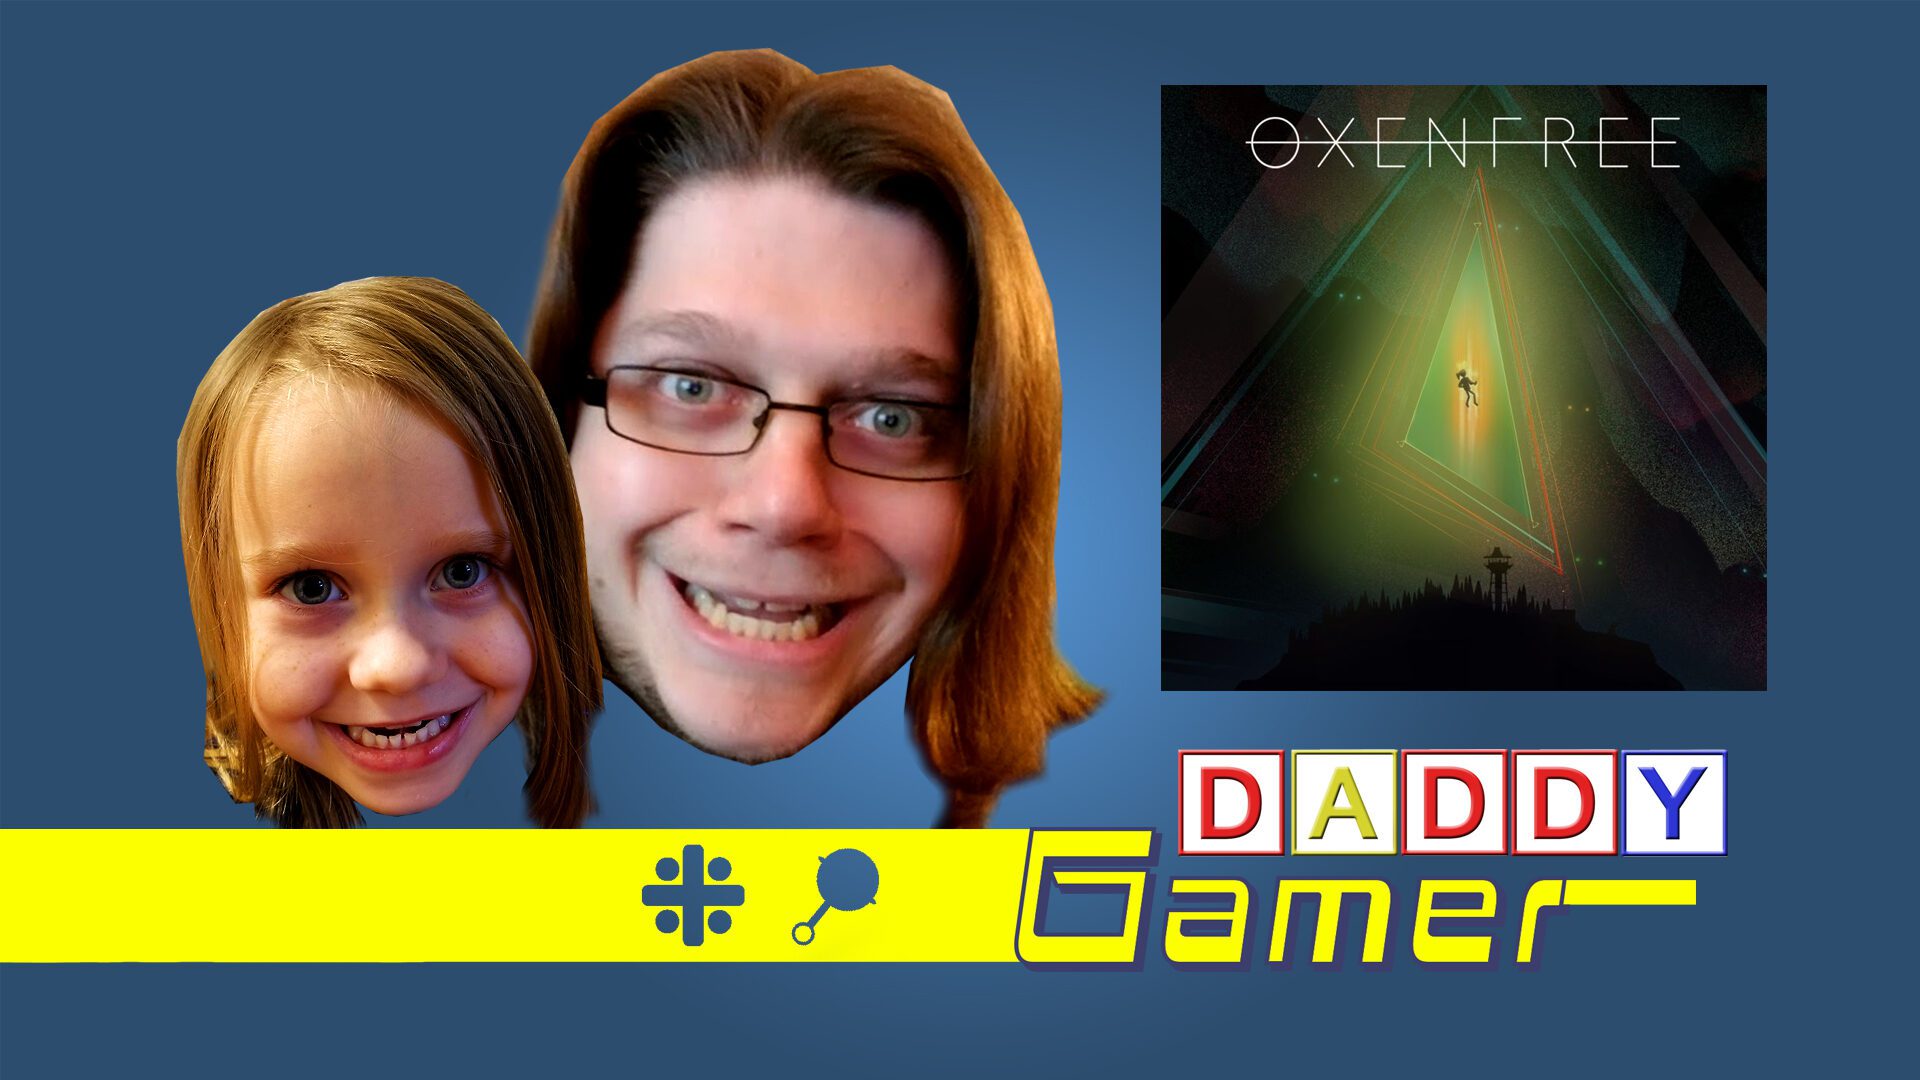 Daddy Gamer Episode 12: Oxenfree